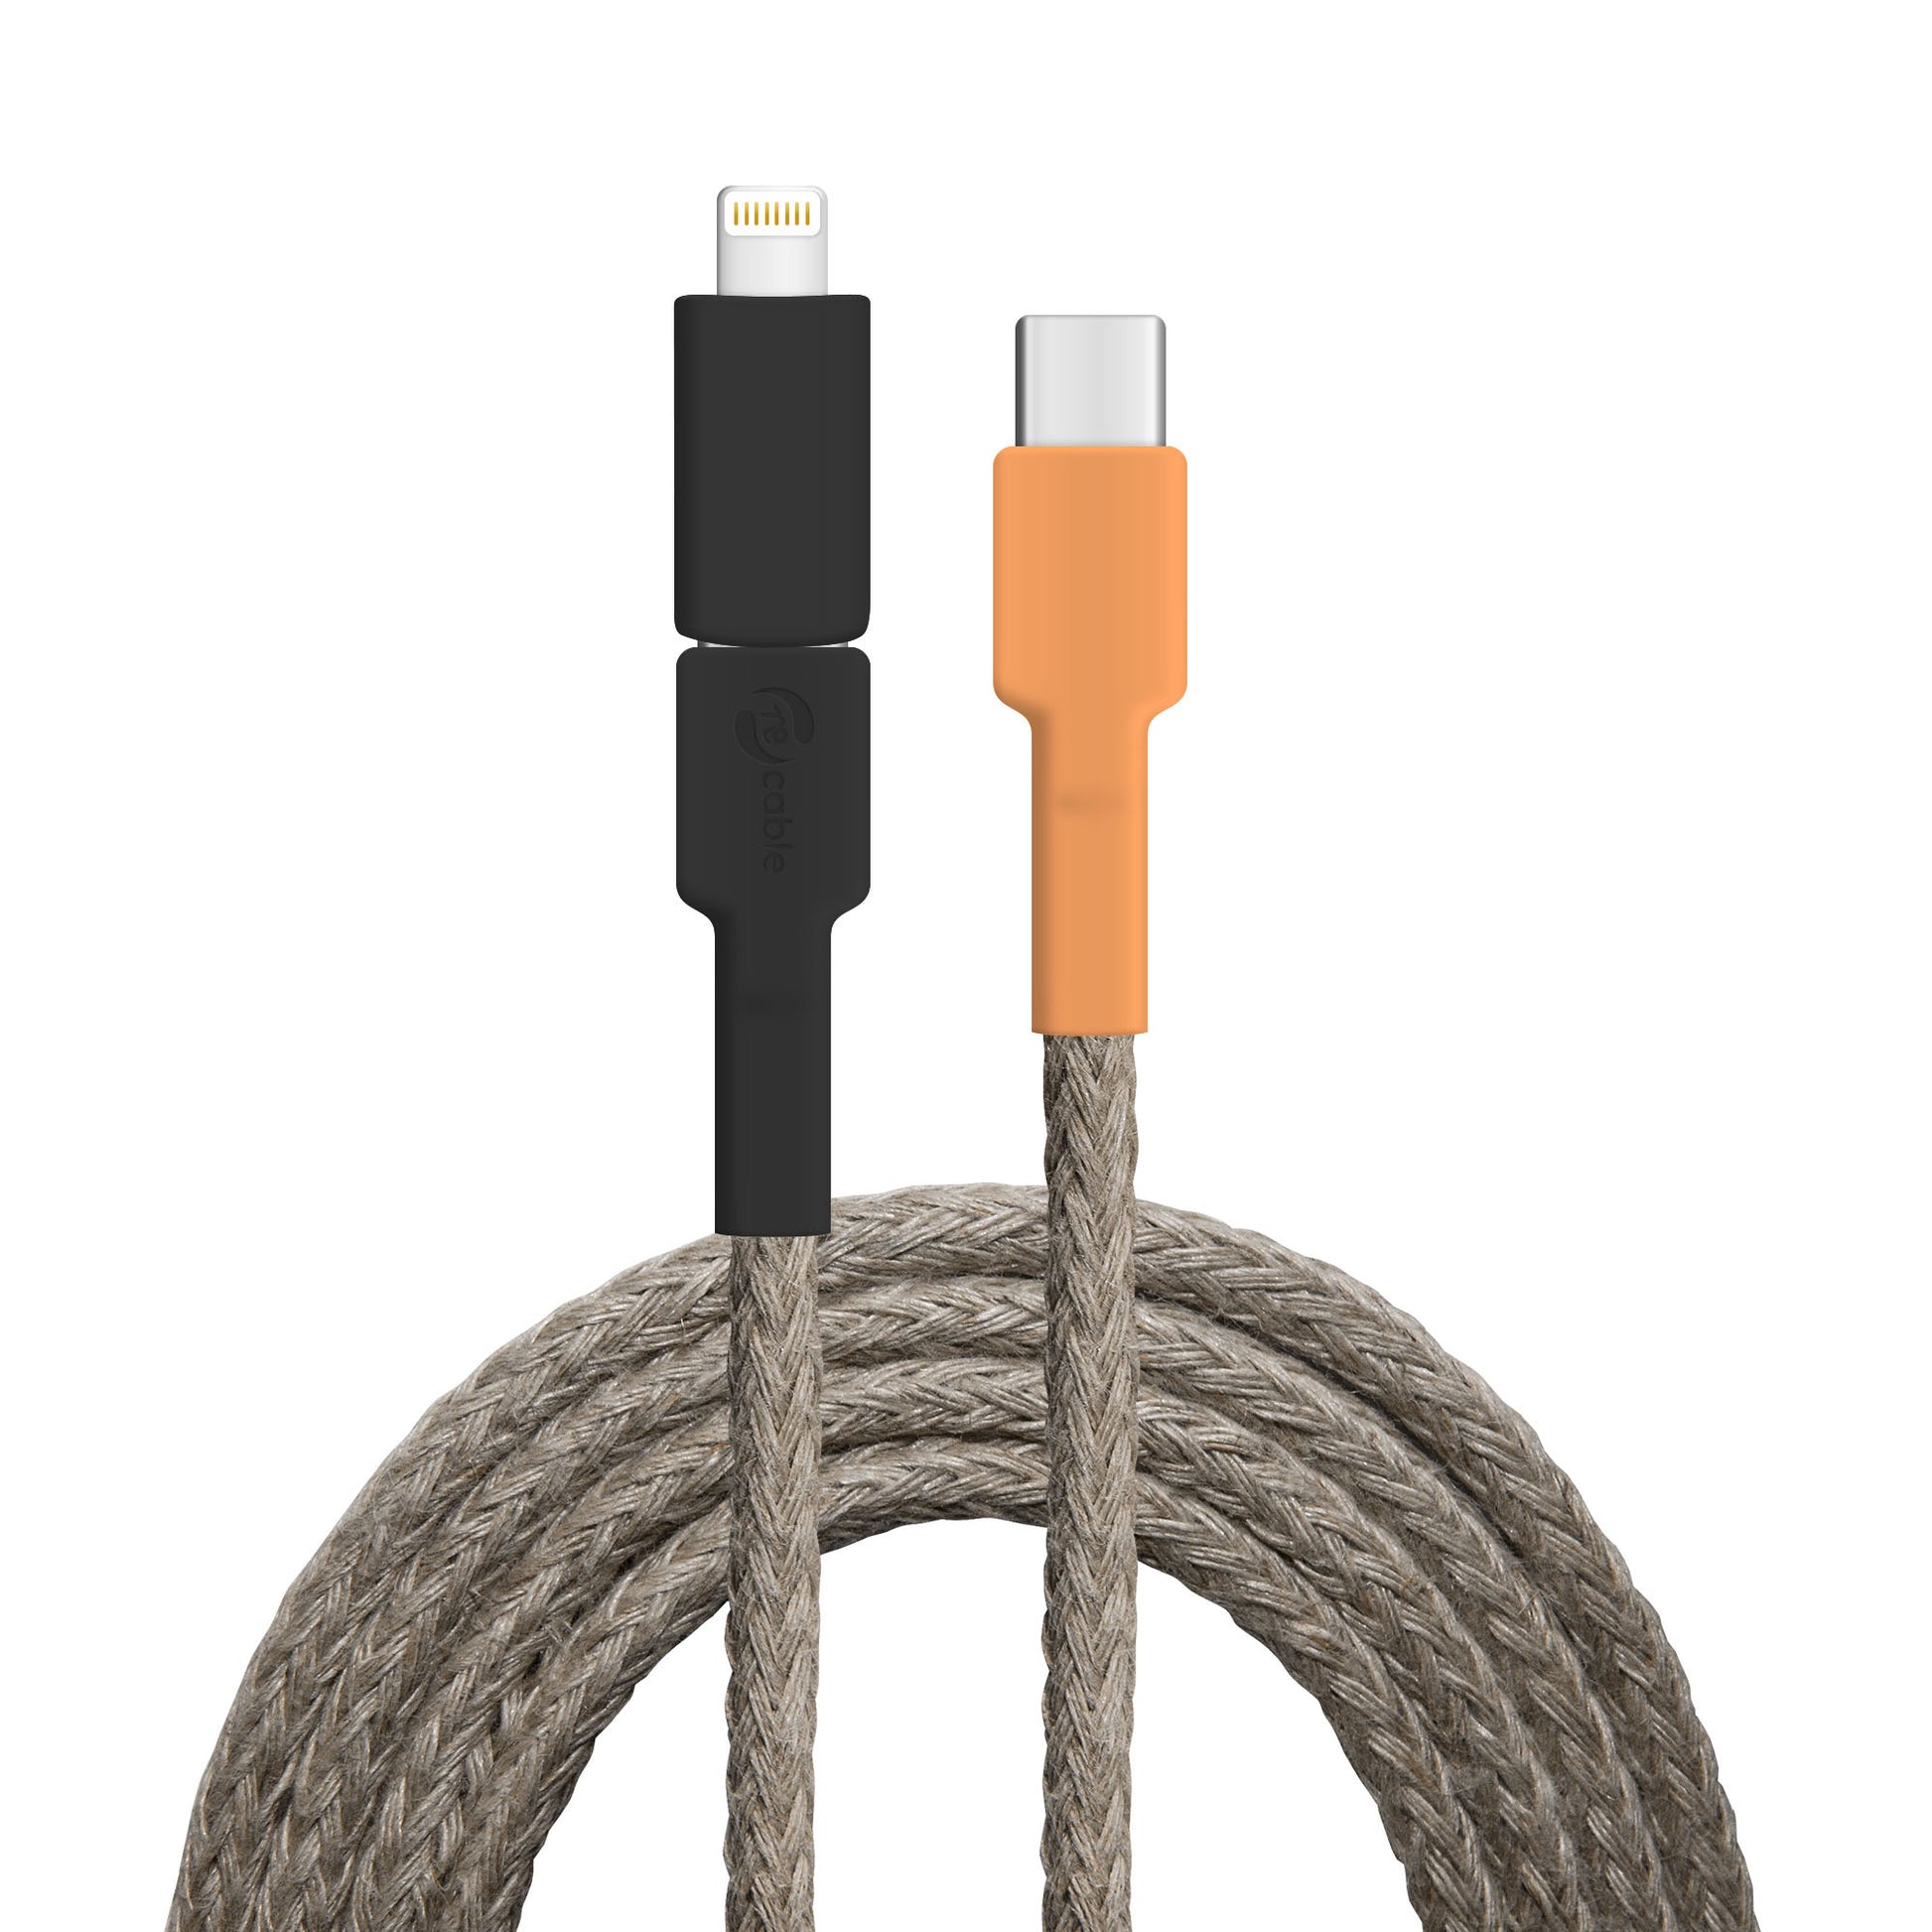 USB-Kabel, Design: Wasserhahn, Anschlüsse: USB C auf USB C mit Lightning Adapter (verbunden)